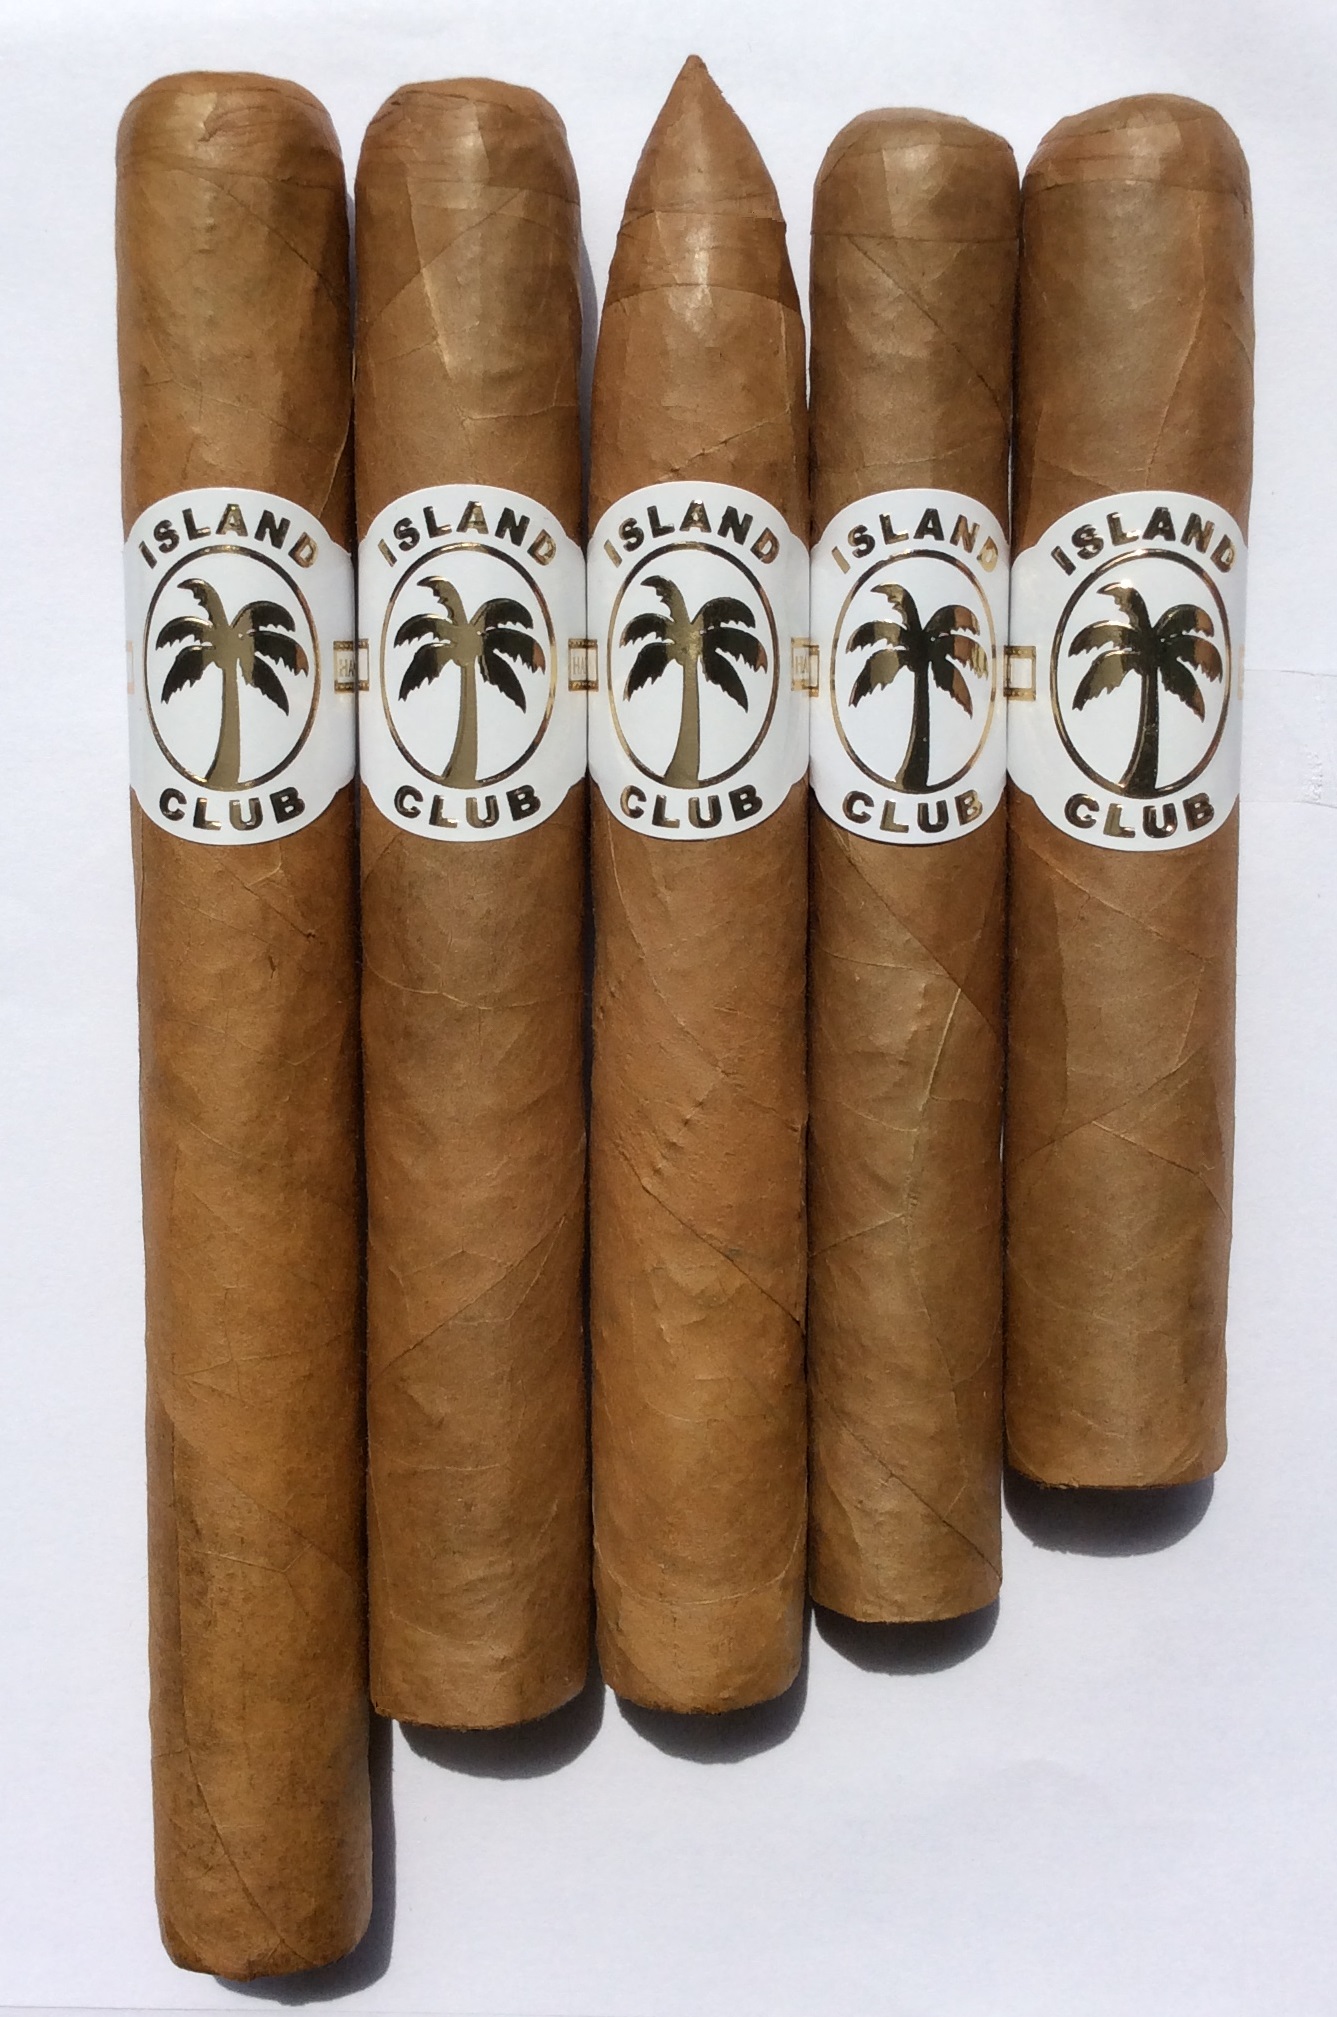 Island Club Cigars